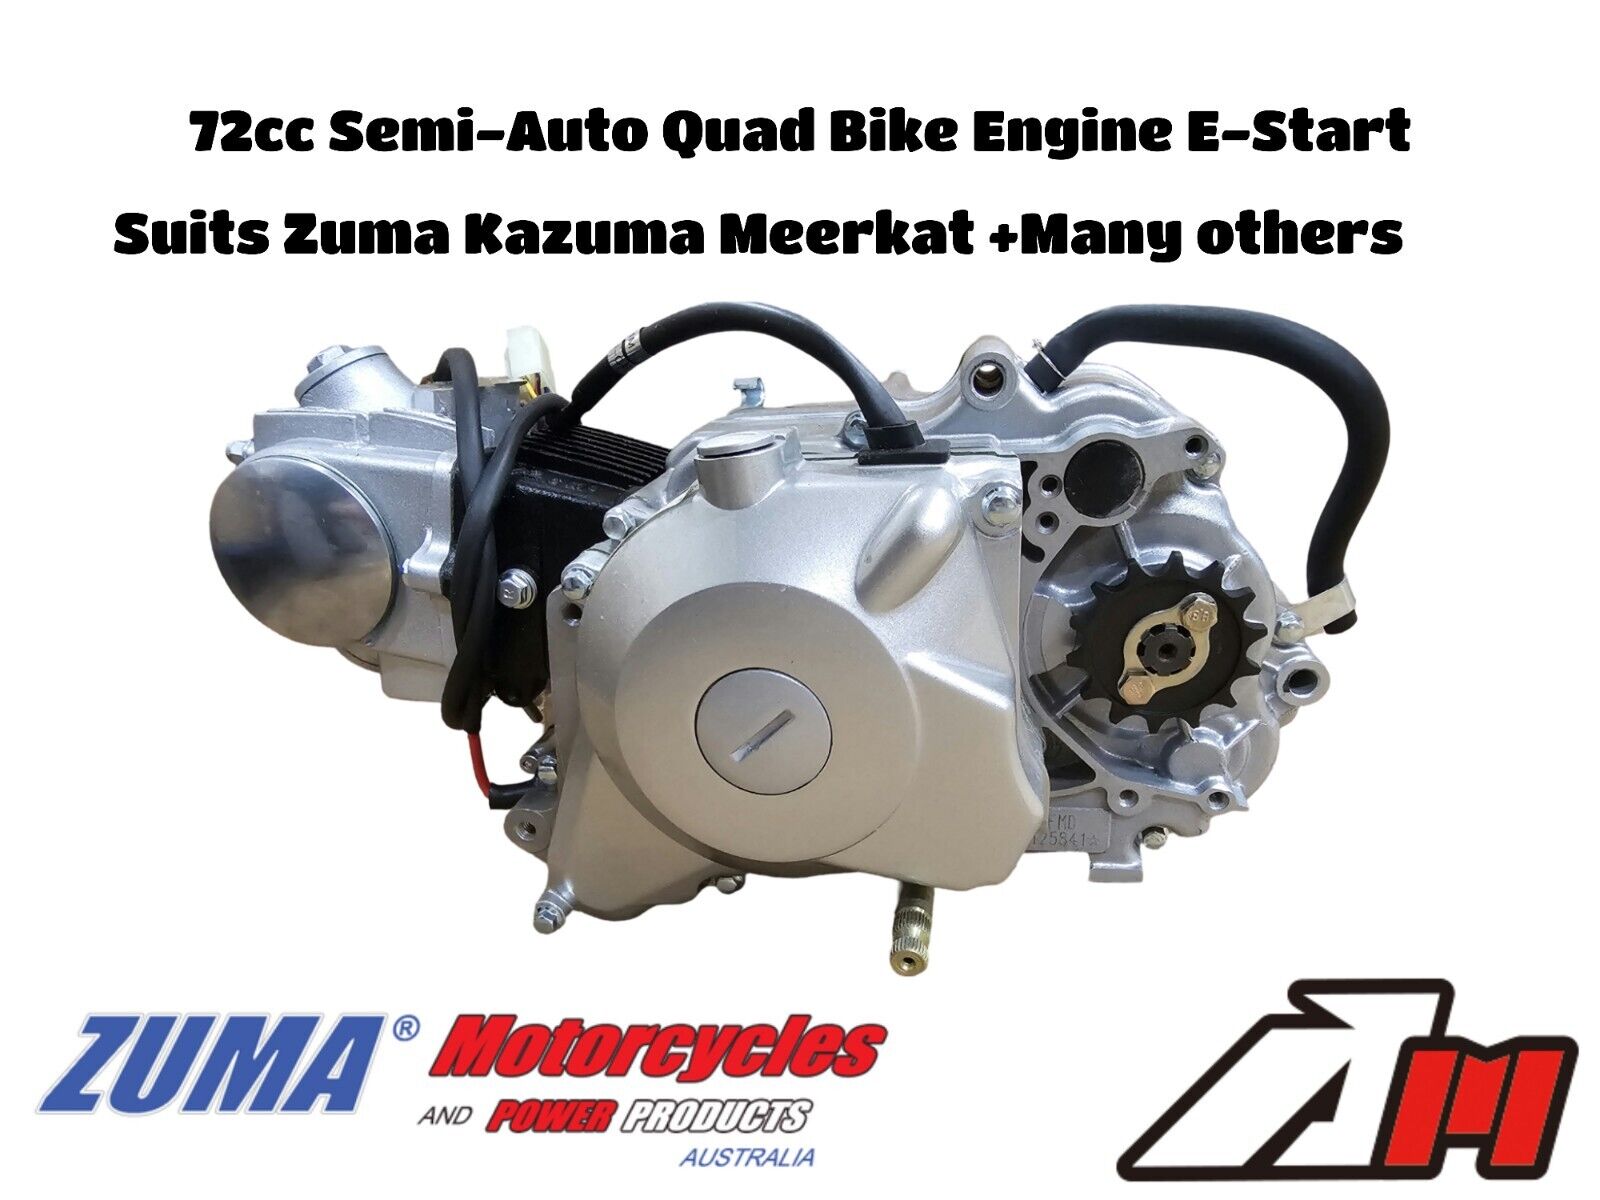 70cc Quad Bike Engine E-Start Semi Auto